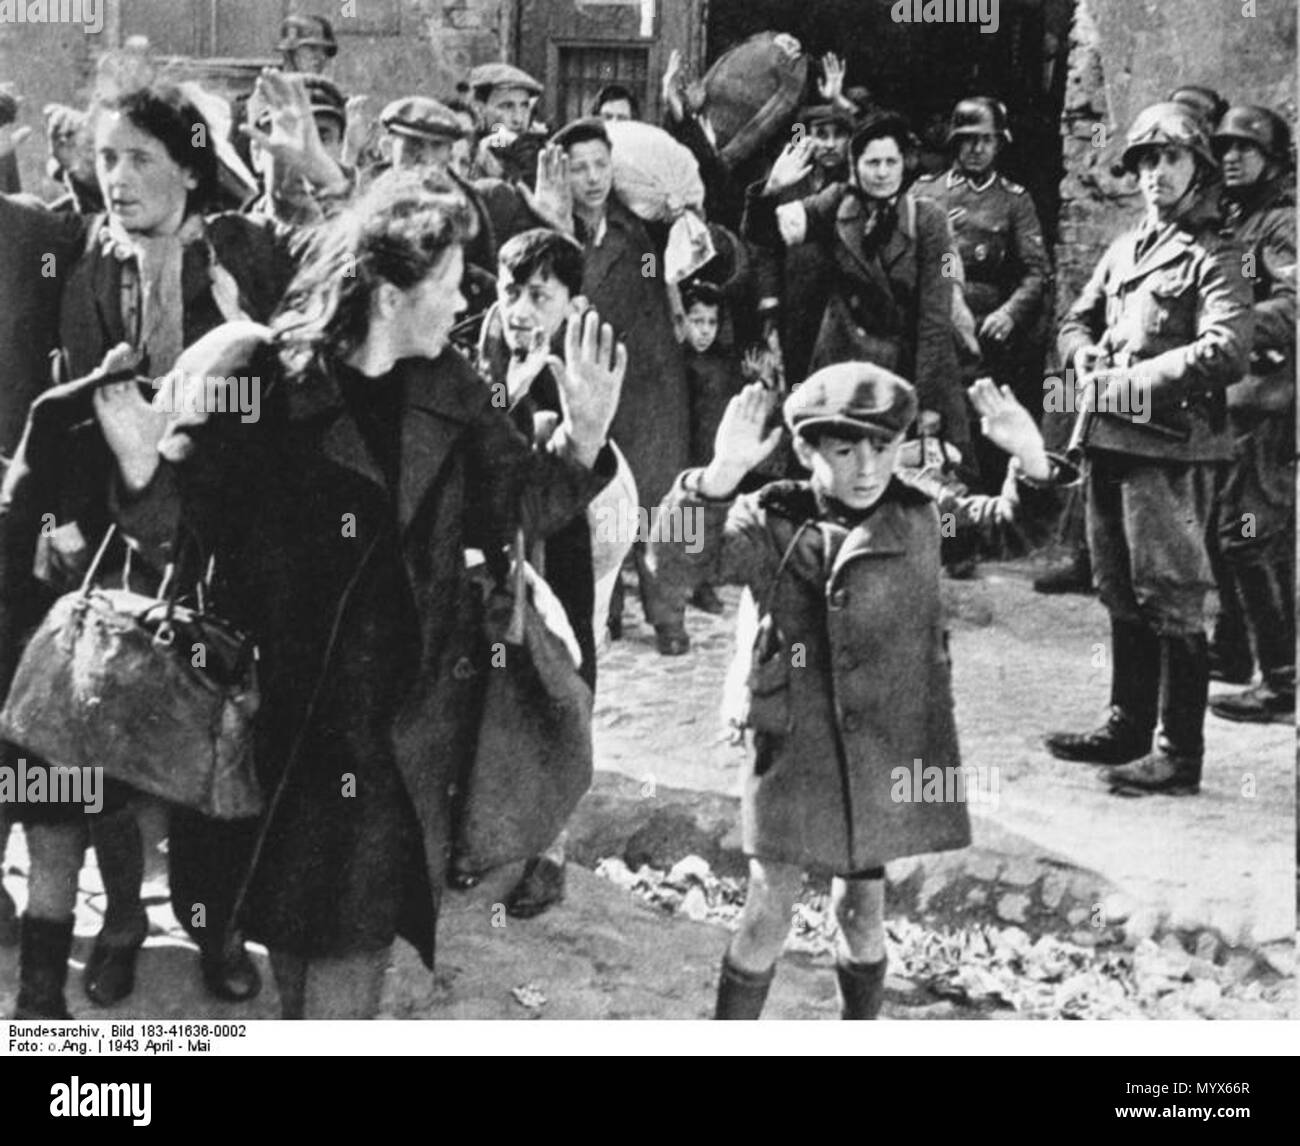 . Informationen der Wikimedia Benutzer hinzugefügt. Hinweis: Dies ist eine minderwertige, 7/8-Version eines berühmten Foto aus der Ddr/DDR-Archiv erworben (ADN). Für die komplette Foto (mit dem kleinen Mädchen Hanka Lamet auf der linken Seite) finden Sie in den anderen Versionen. Englisch: Warschauer Ghetto - Foto von Jürgen Stroop Bericht zu Heinrich Himmler von Mai 1943. Der deutsche Titel lautet: "gewaltsam zog von grub-outs". Menschen im Bild erkannt: Junge in den vorderen wurde nicht erkannt, einige mögliche Identitäten: Artur Dab Siemiatek, Levi Zelinwarger (neben seiner Mutter Chana Zelinwarger) und Stockfoto